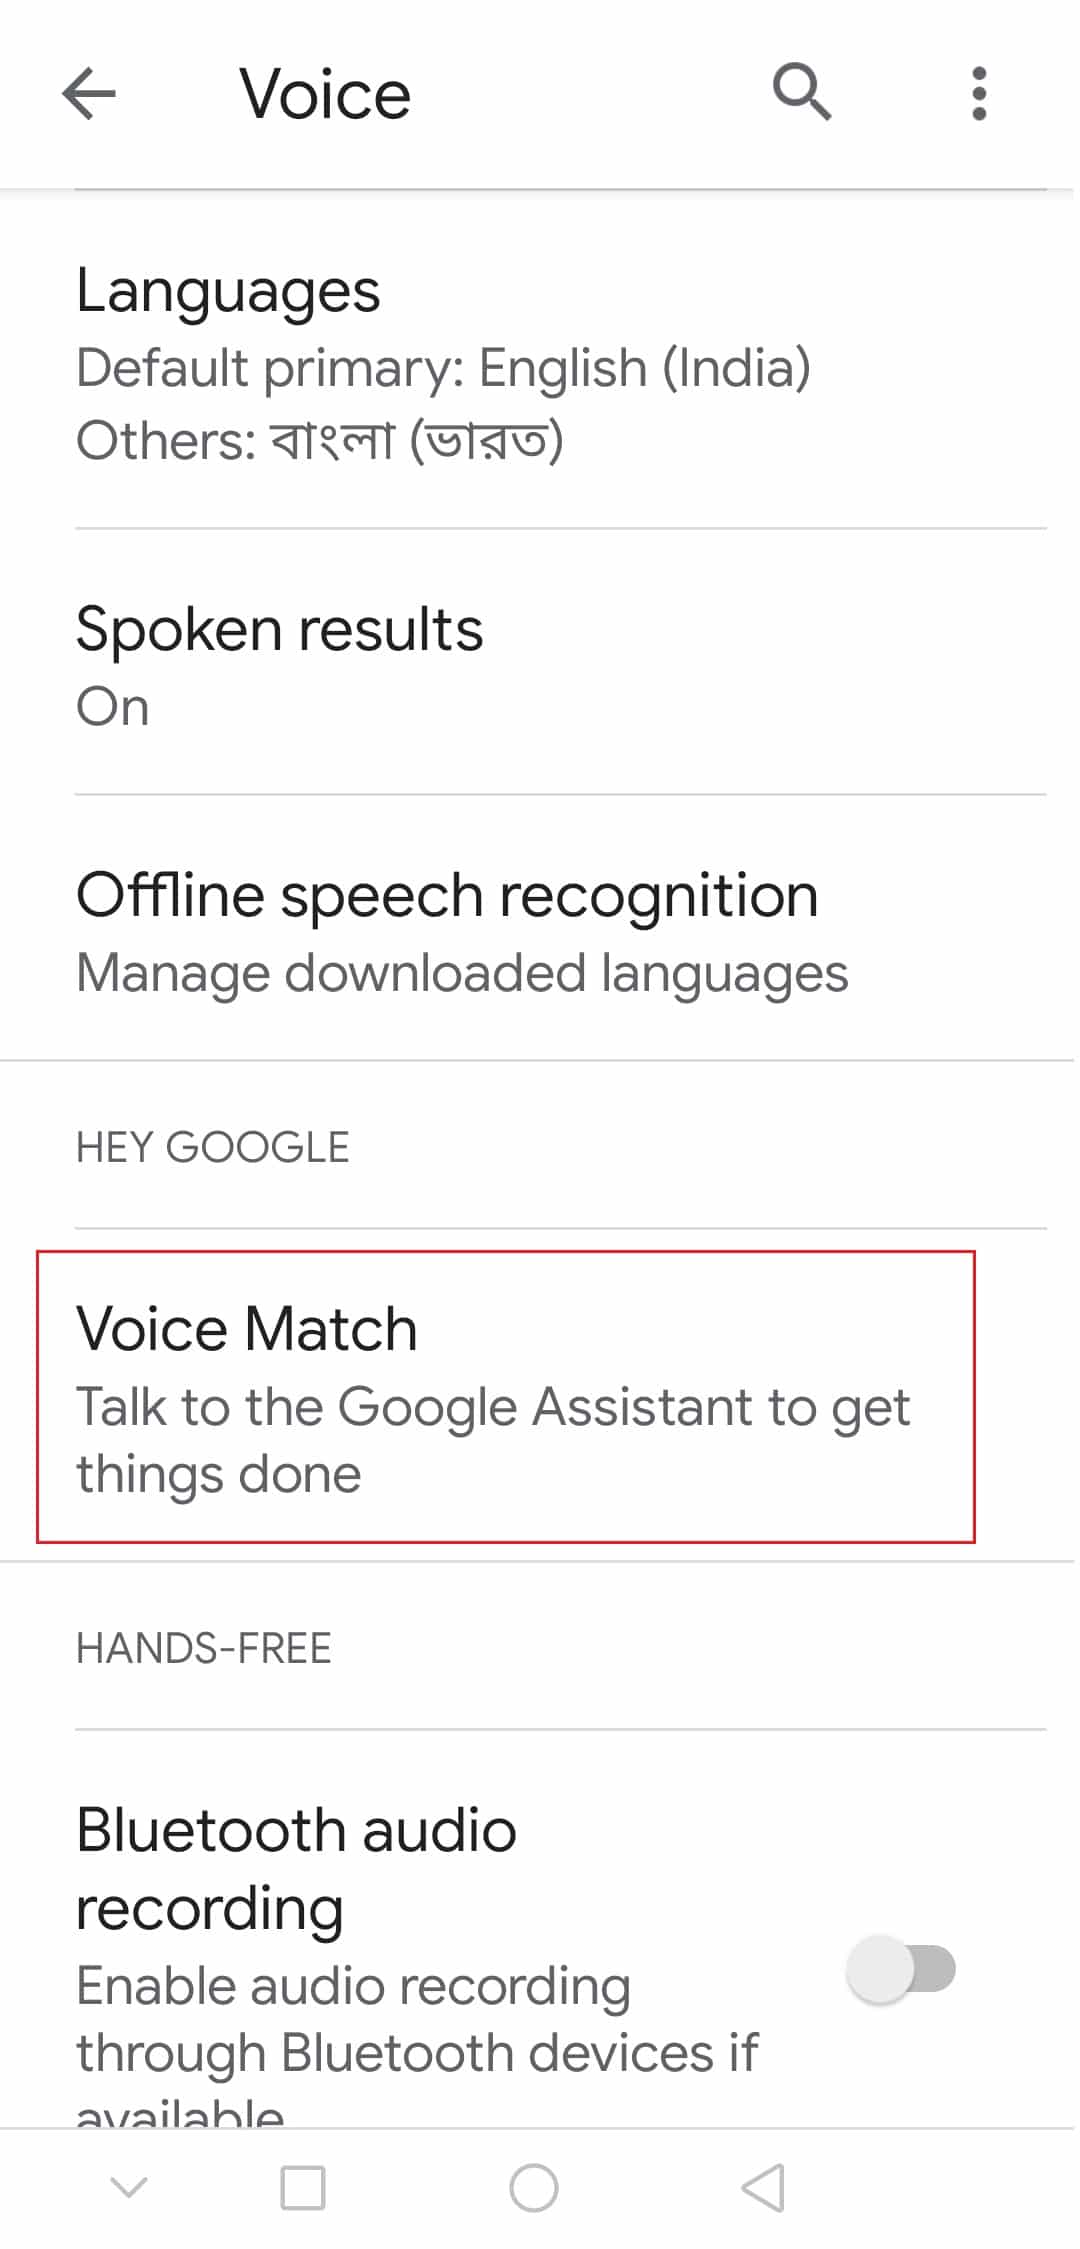 нажмите на опцию голосового соответствия в настройках Google Voice на Android